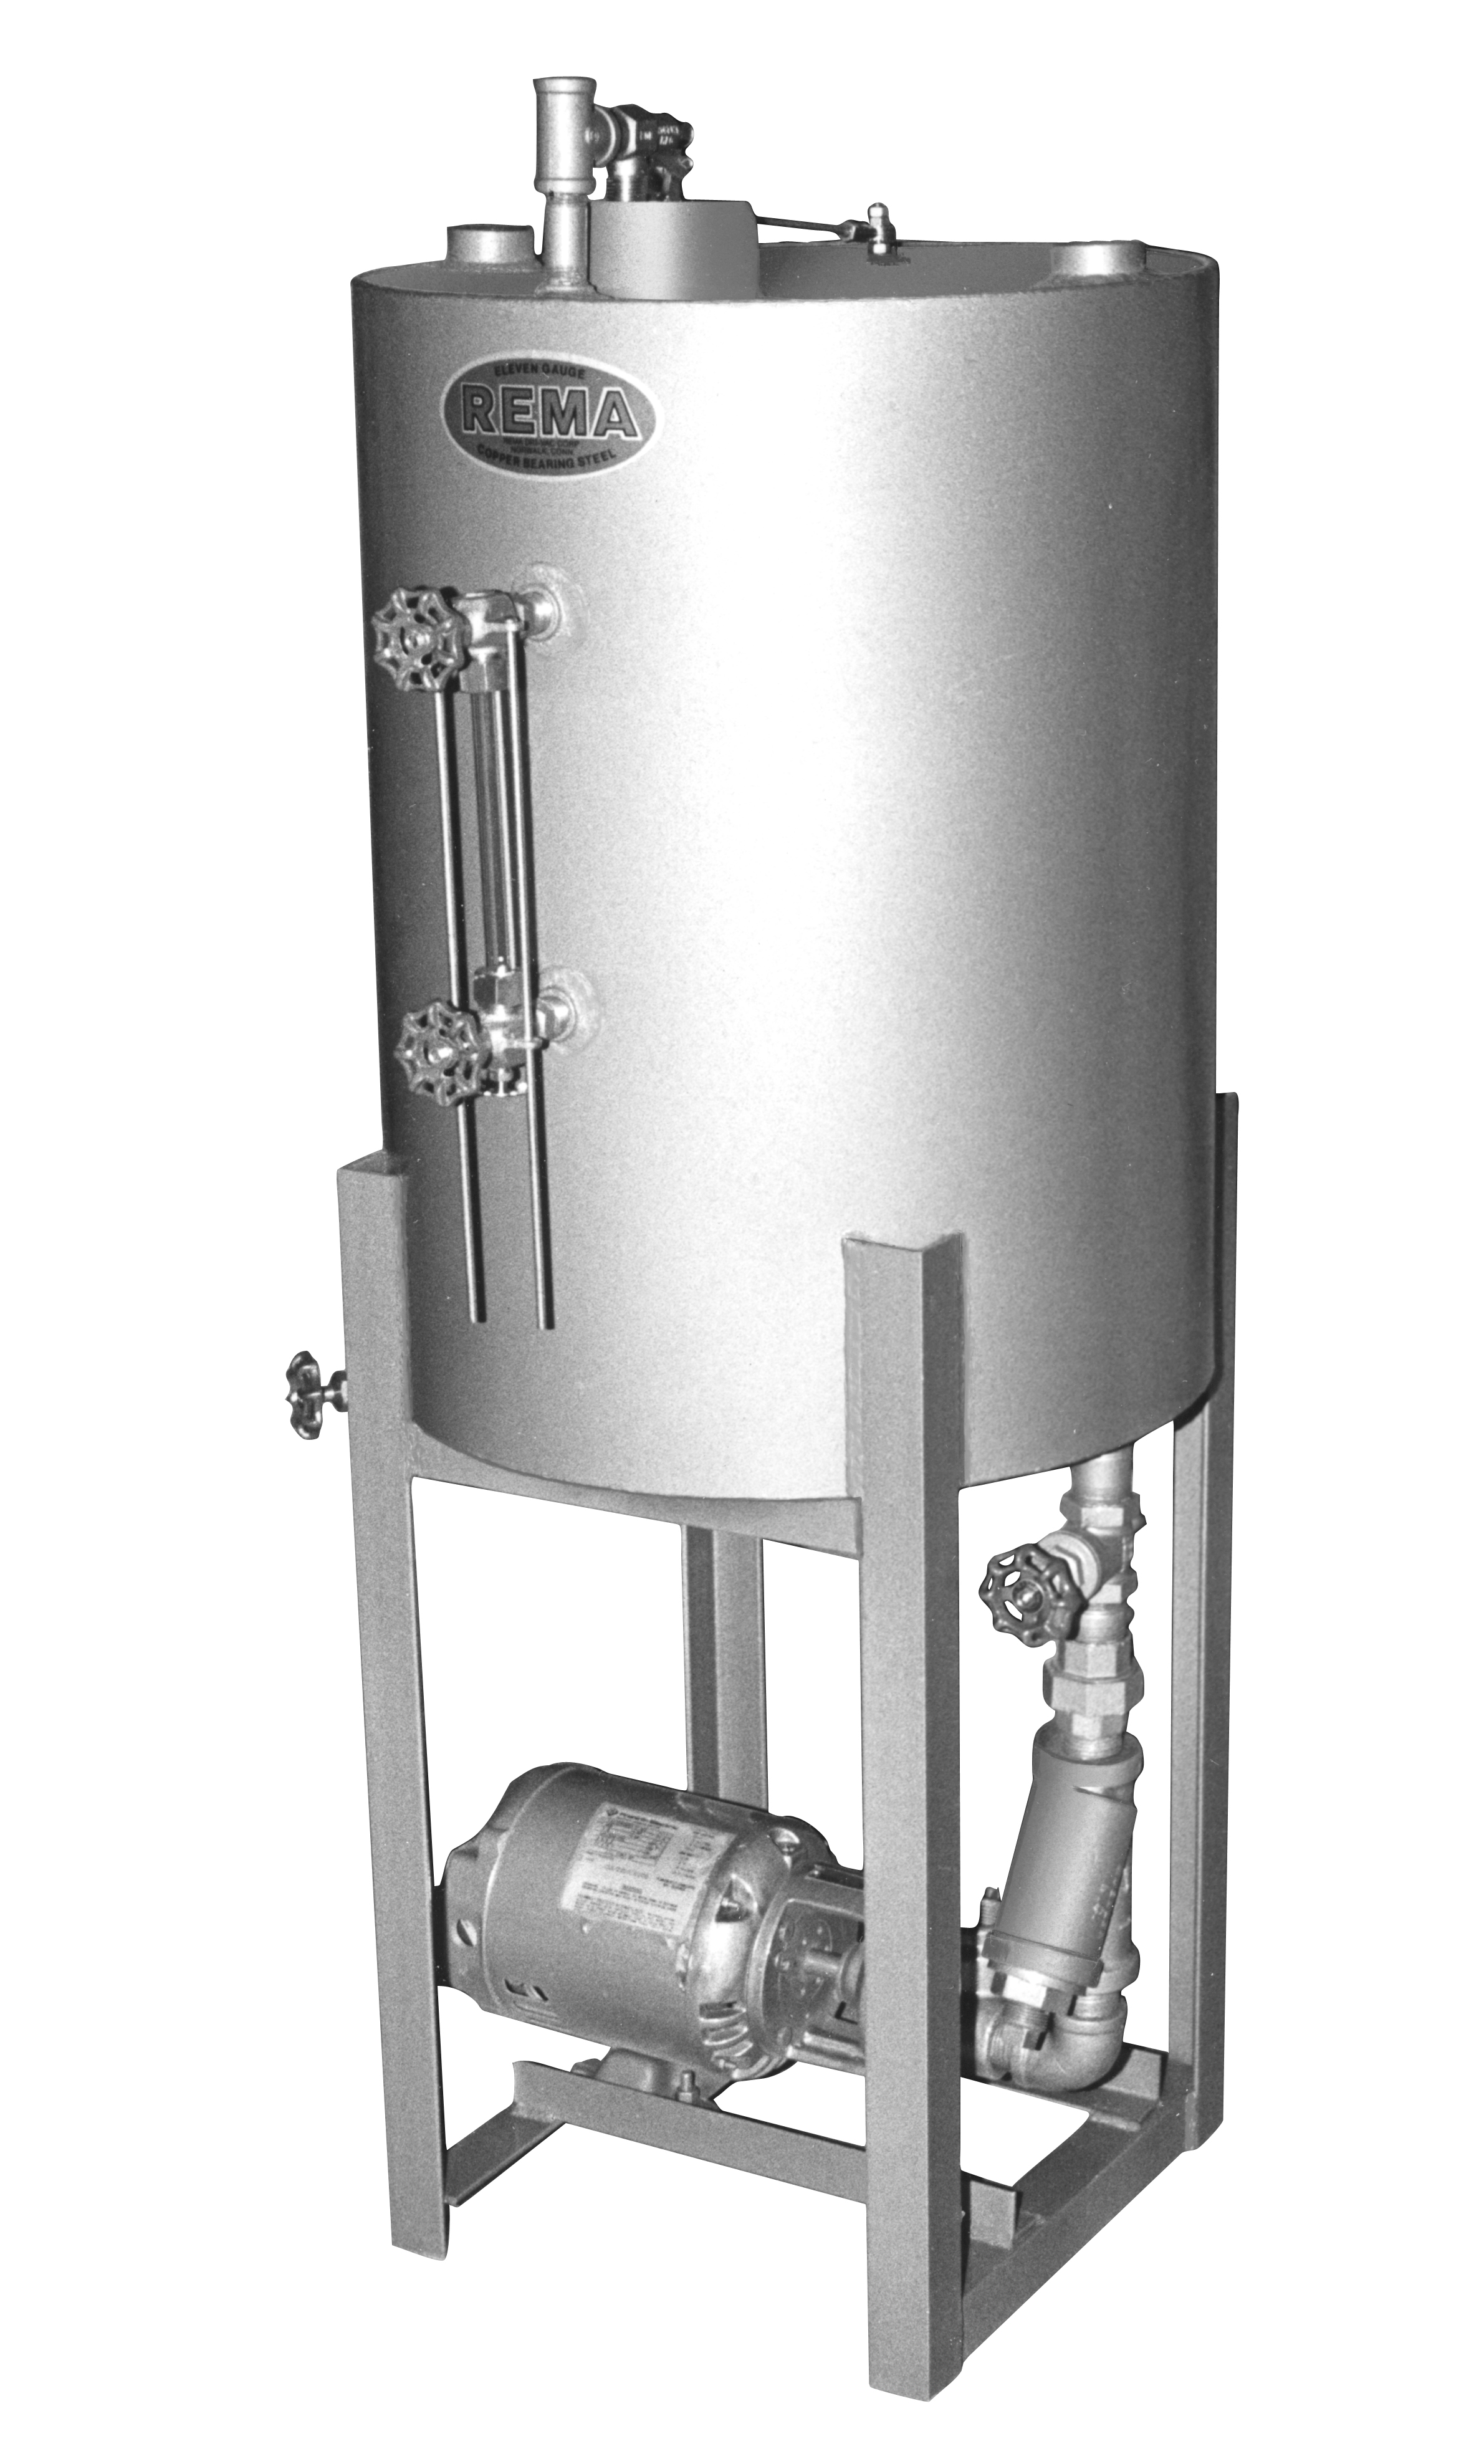 Rema Vertical Boiler Return System